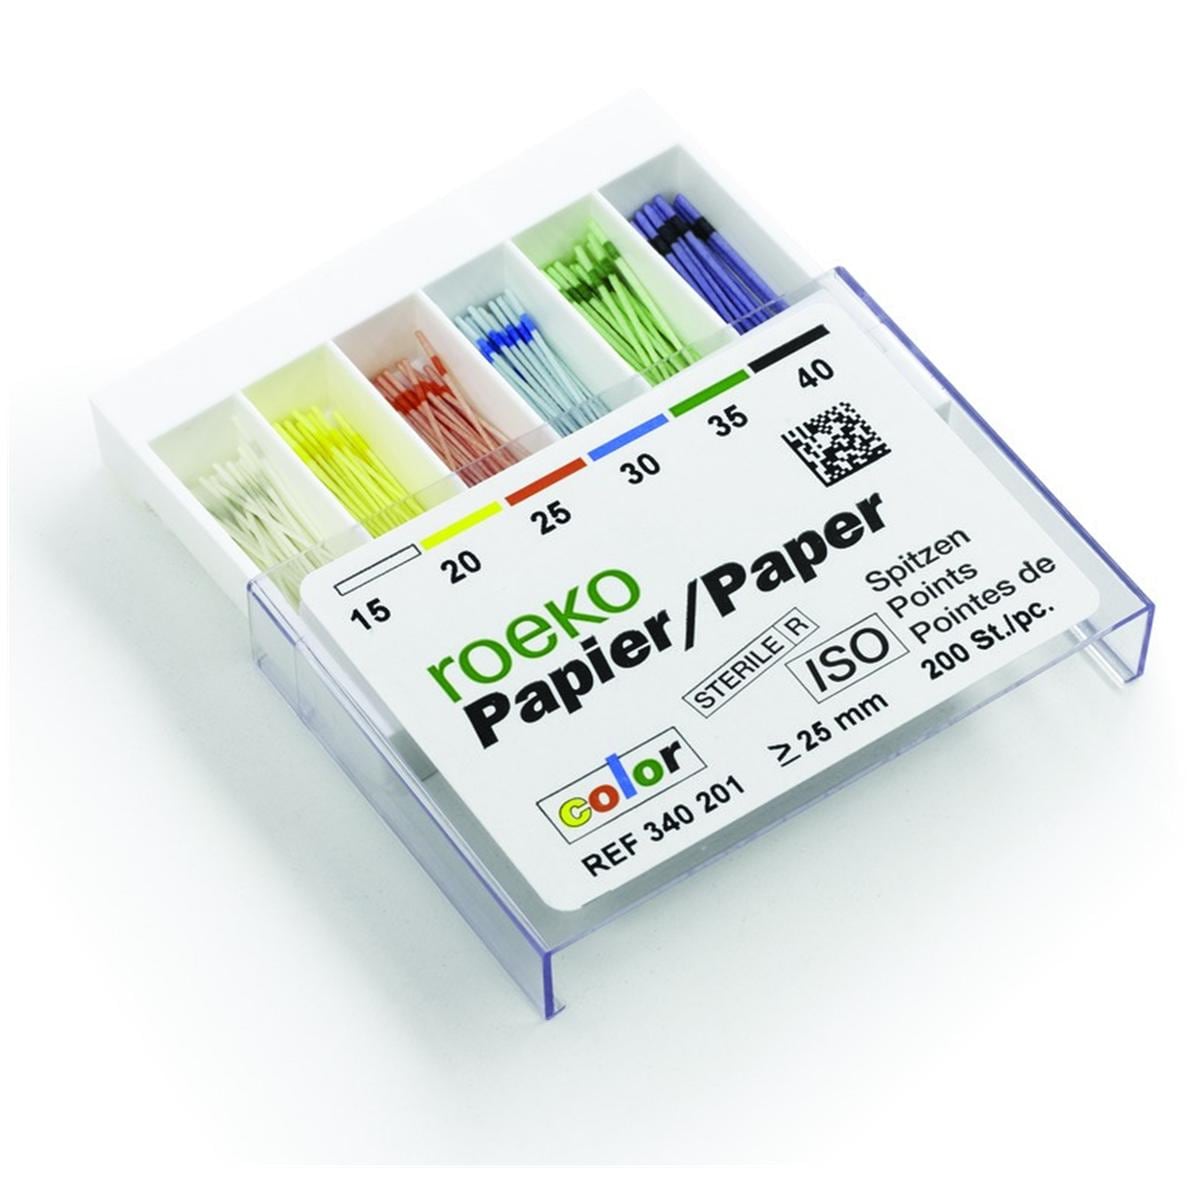 Pointes Papier Iso Color ROEKO - n 15-40 - Bote de 200